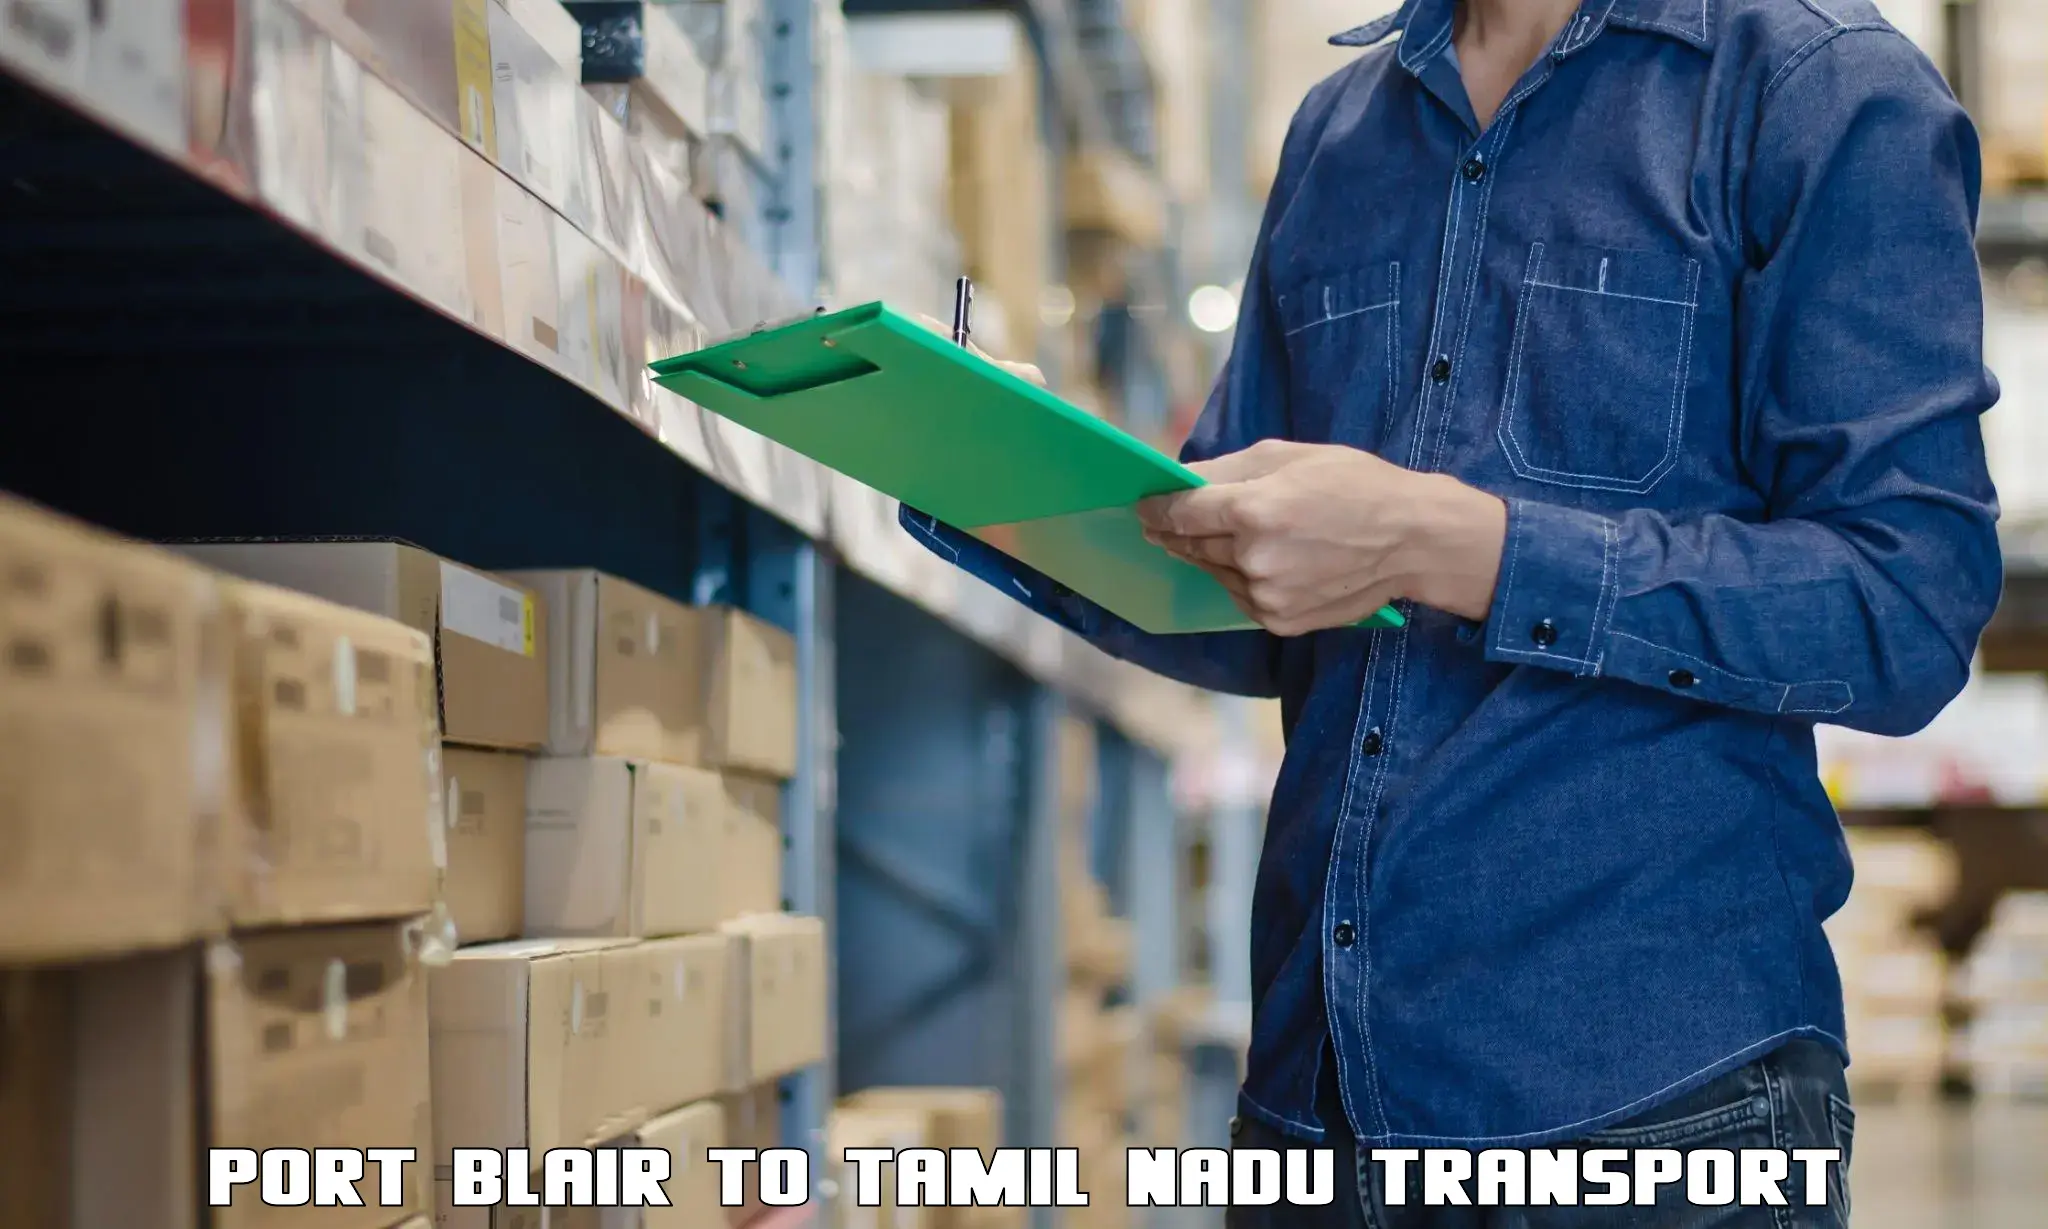 Interstate transport services Port Blair to Tiruturaipundi